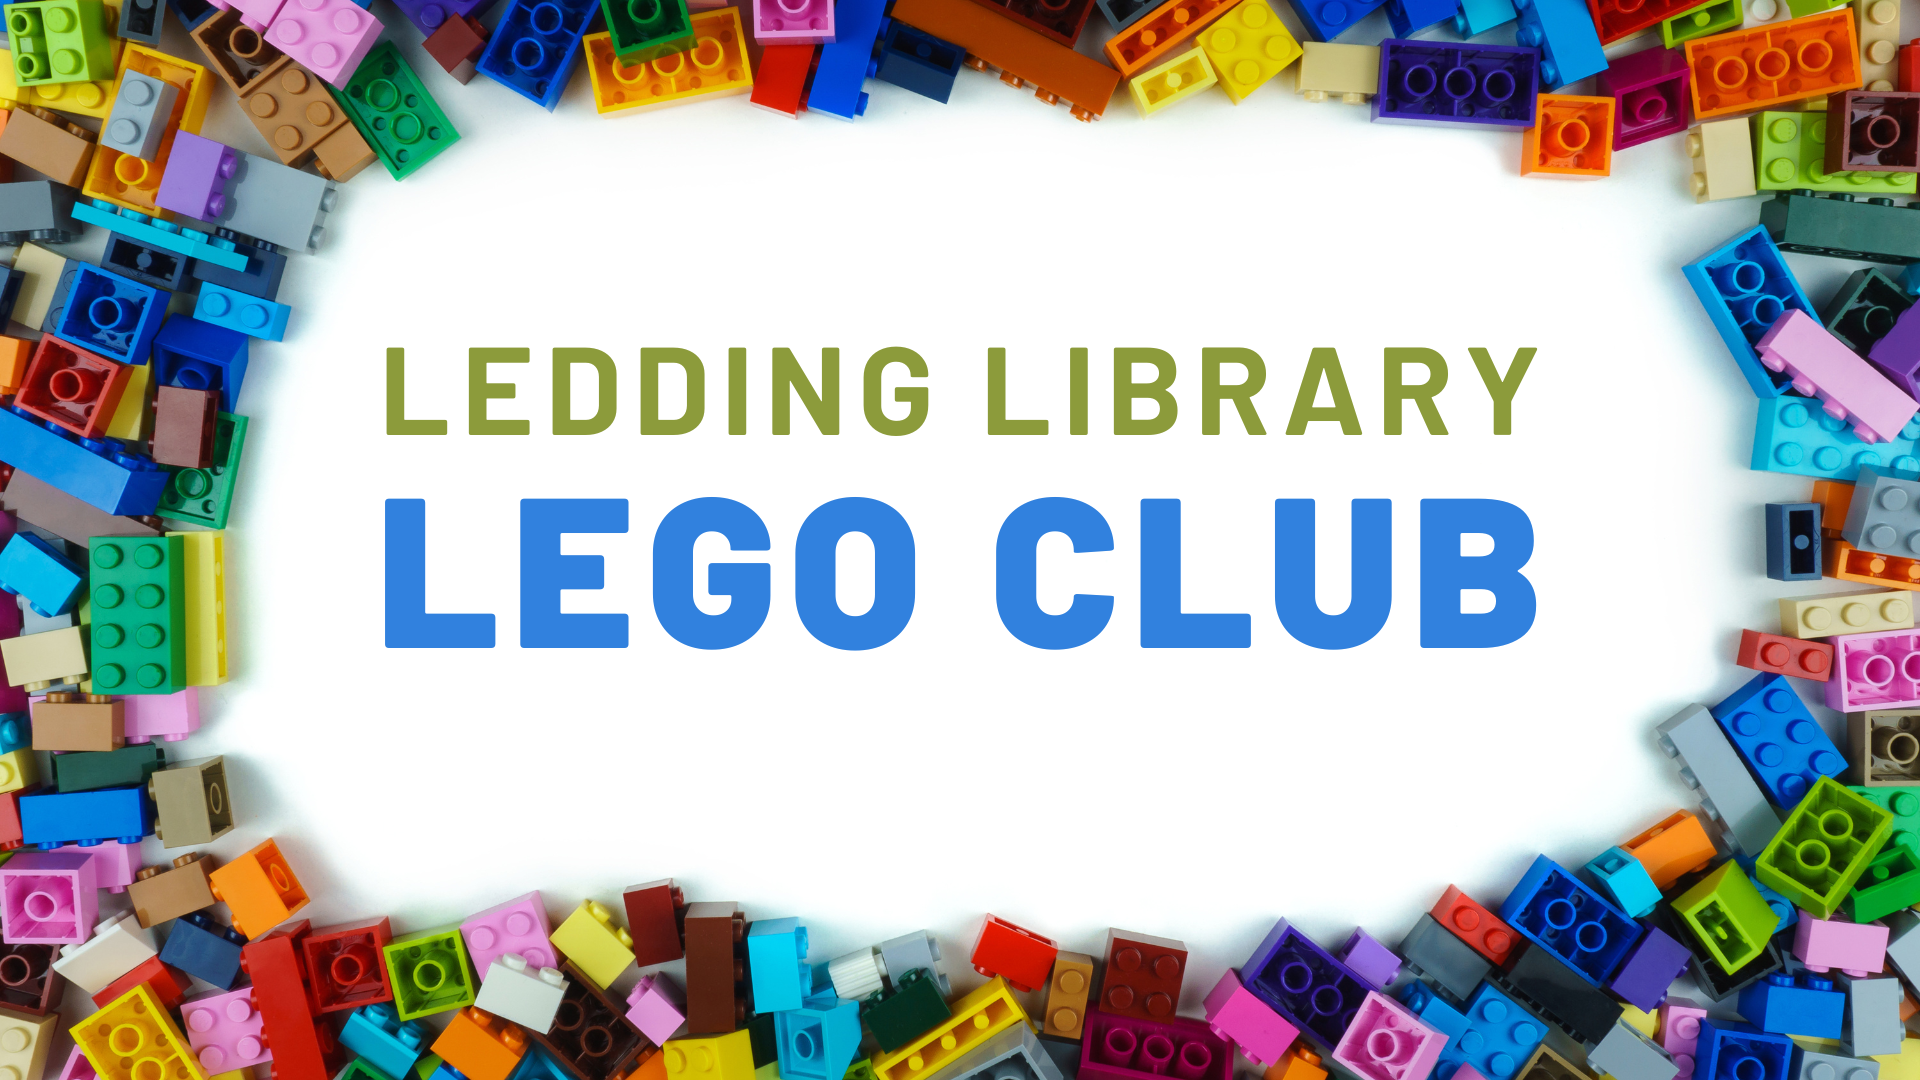 Ledding Library LEGO Club